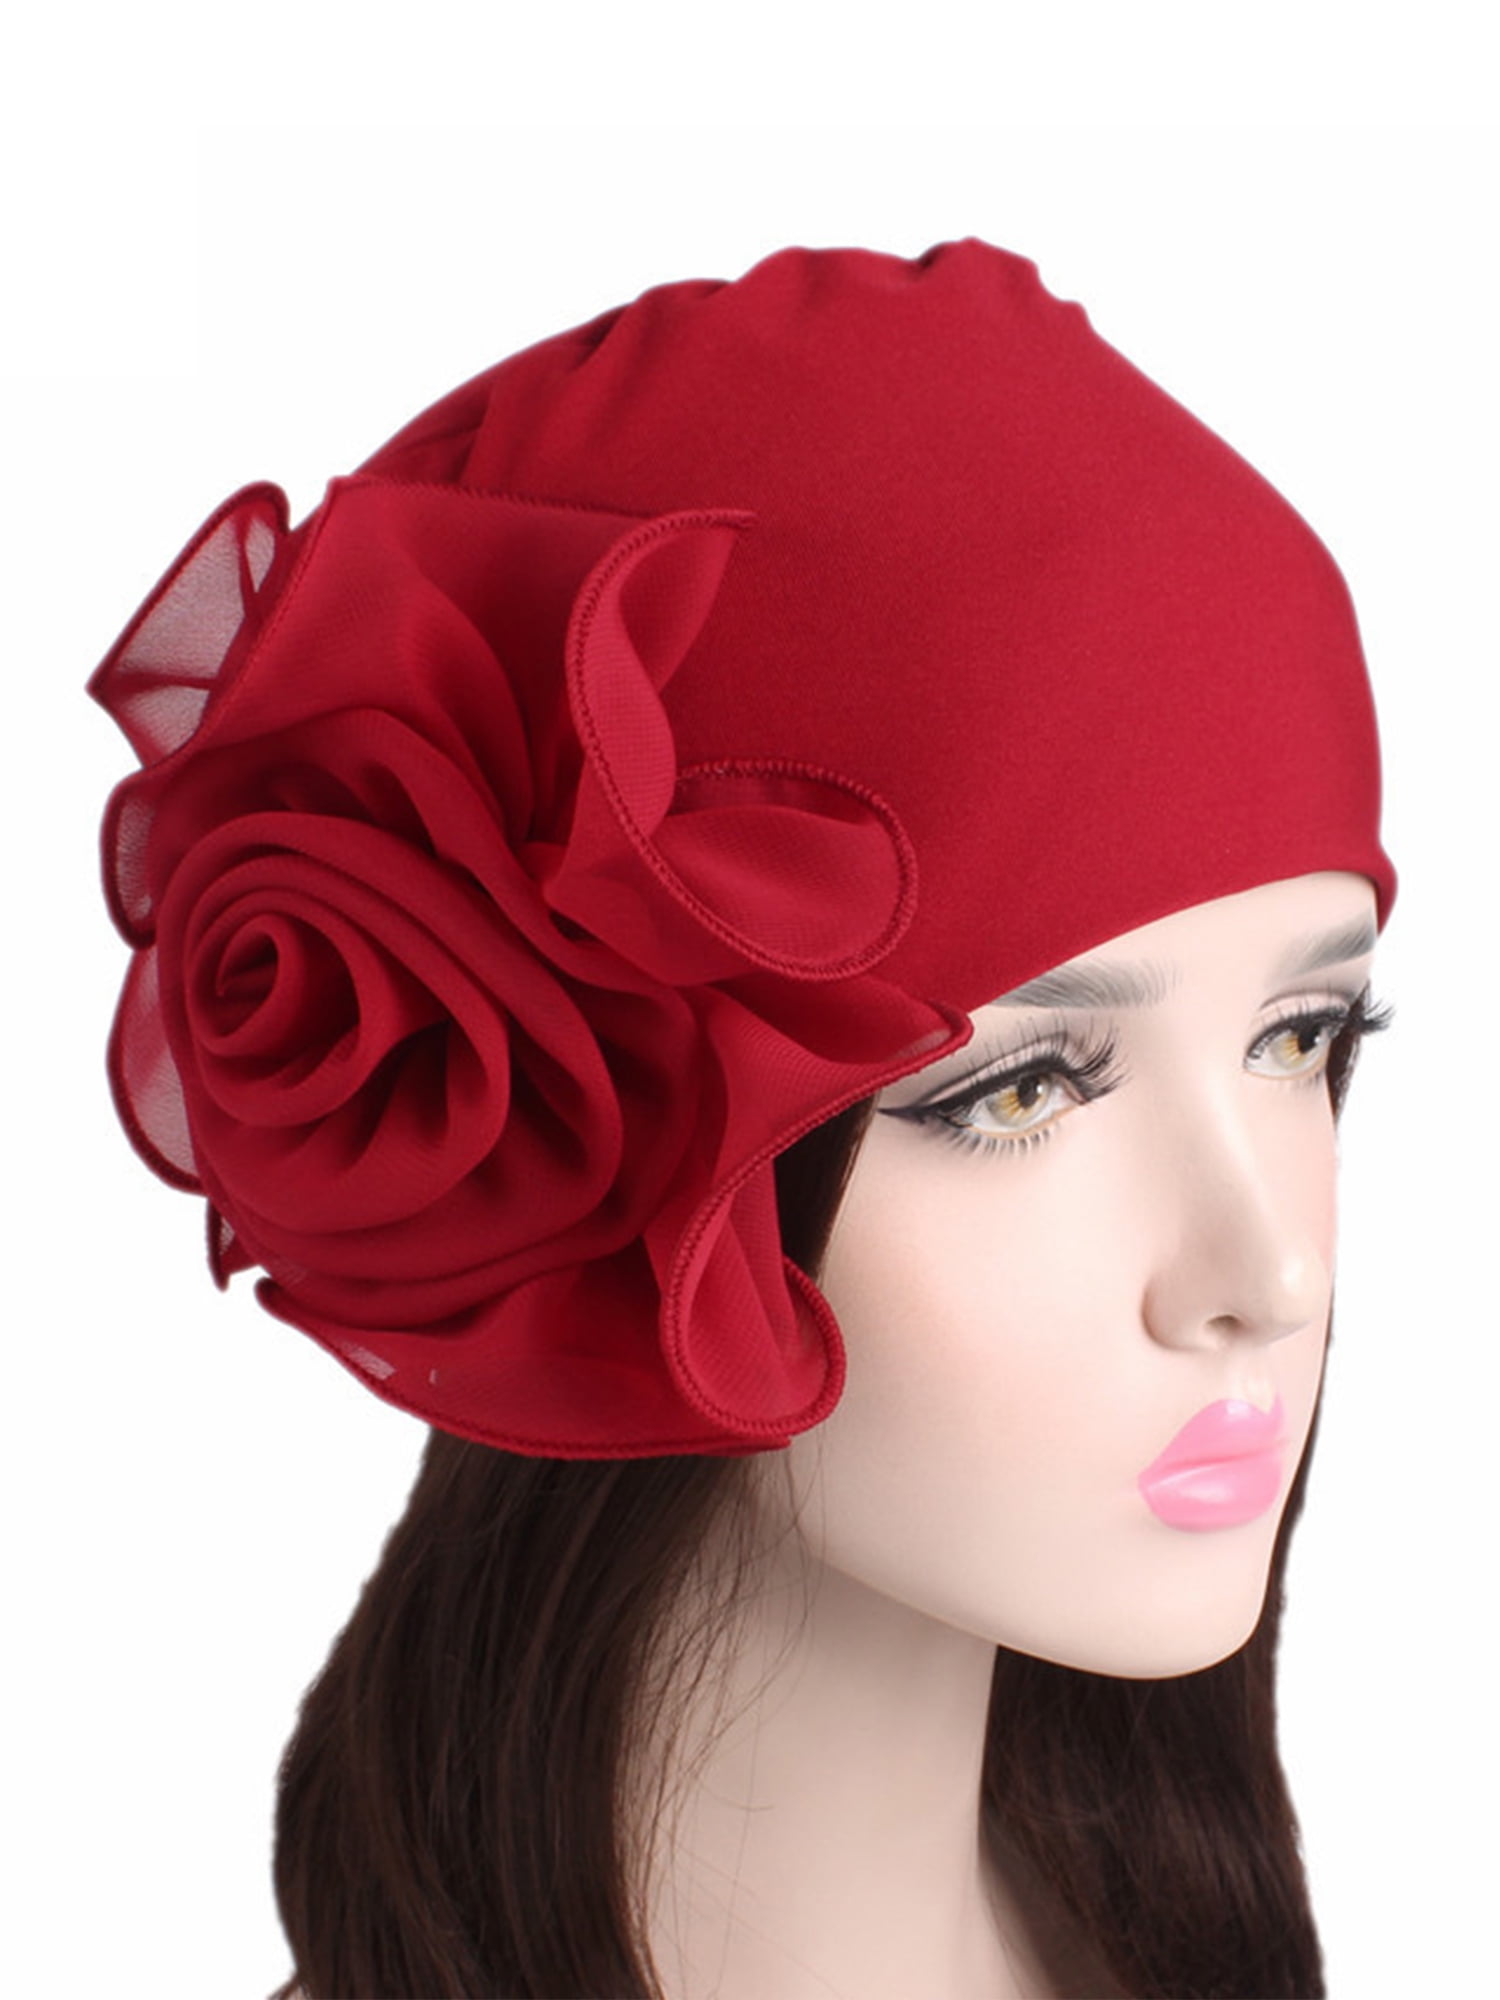 Chemo Headwear for Women Vintage Turbans Bonnet Long Hair Head Scarf Cancer Headwraps Sleep Hat Cap Hair Loss